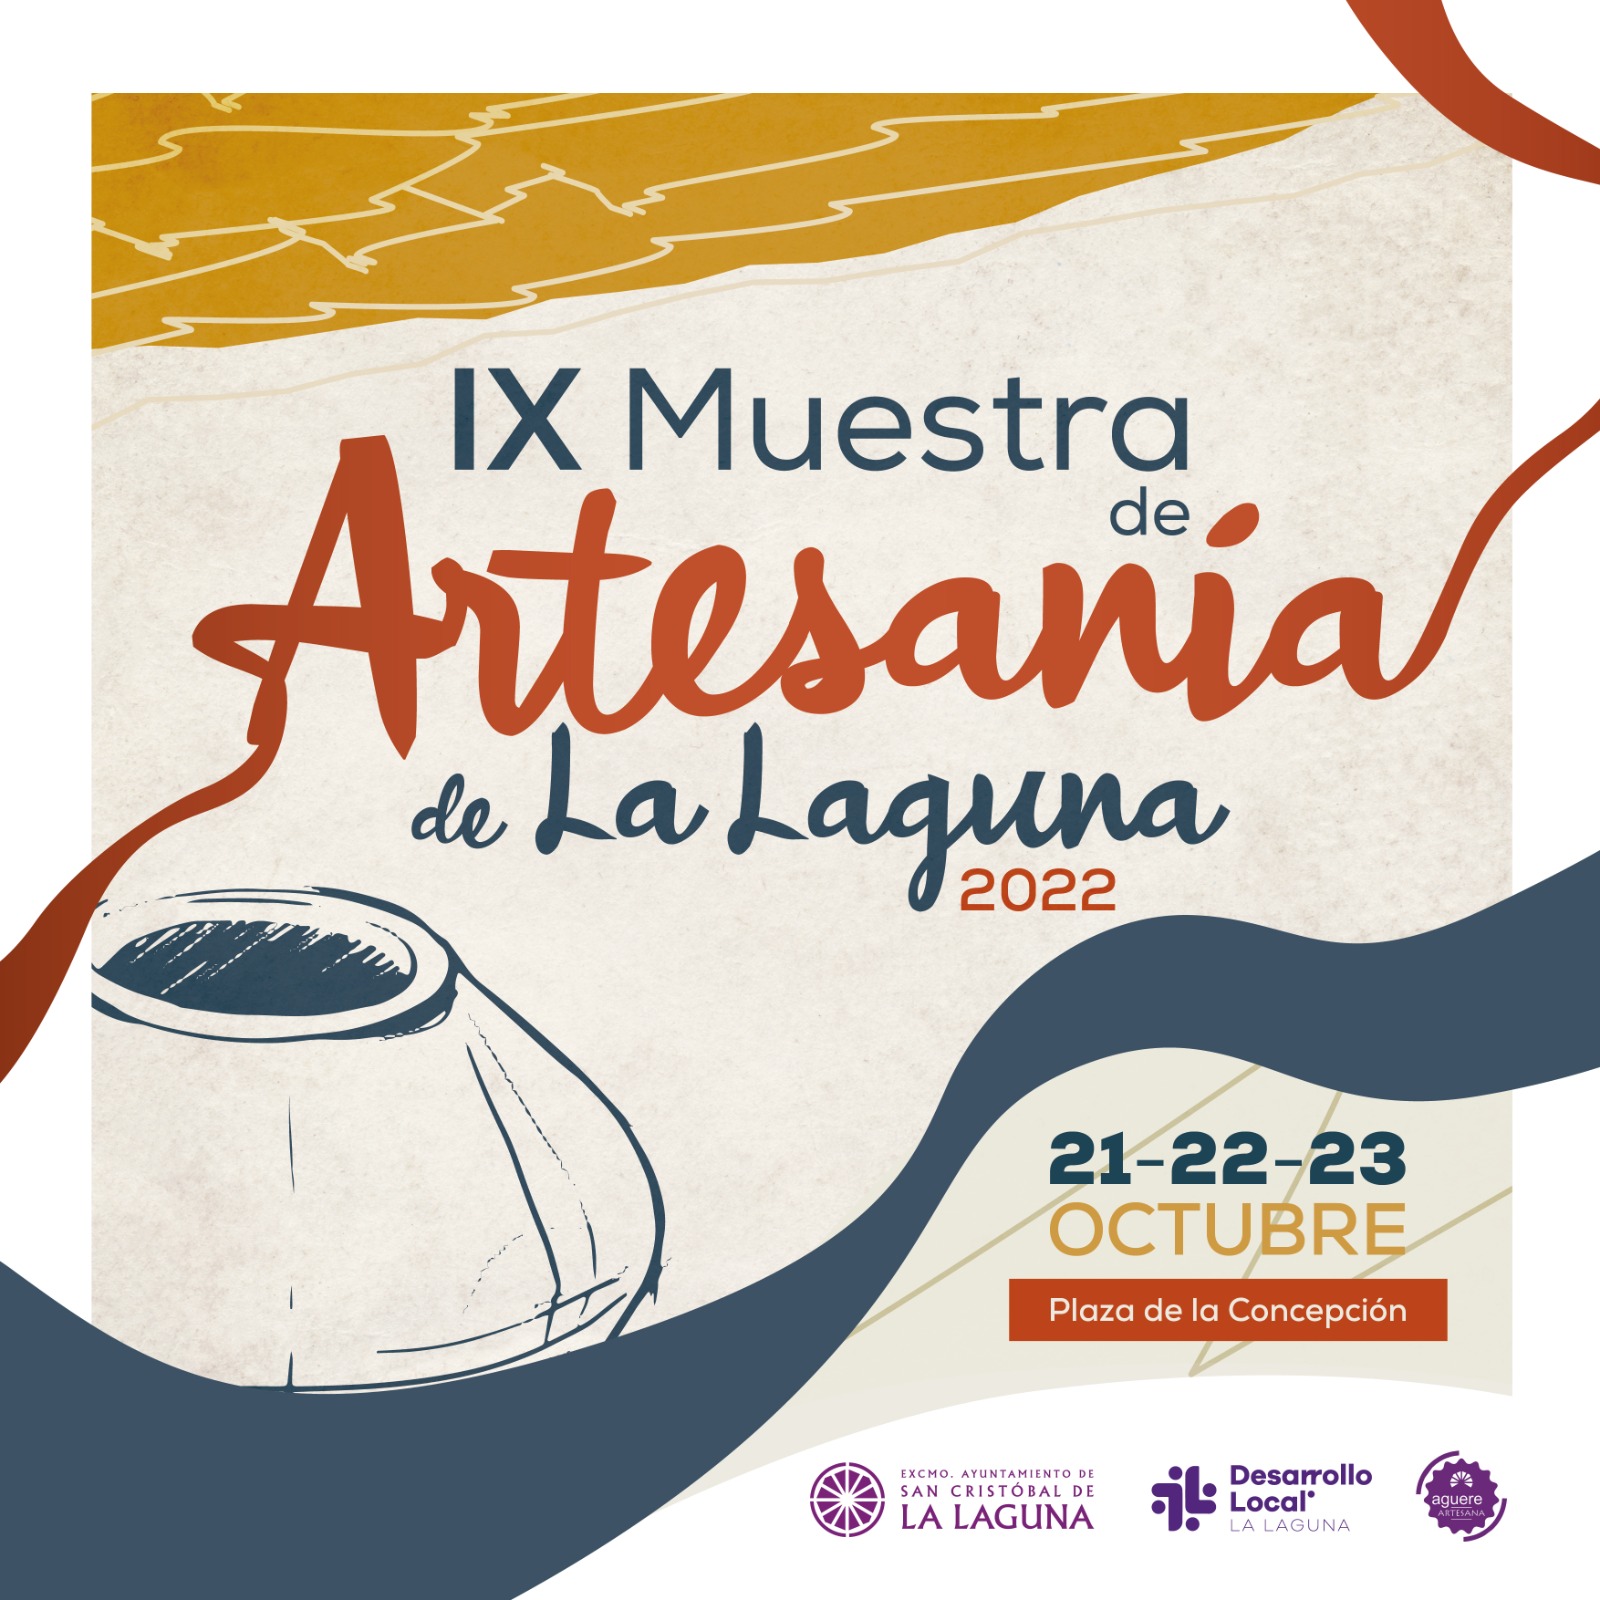 Cartel de anuncio de la novena muestra de artesanía de La Laguna